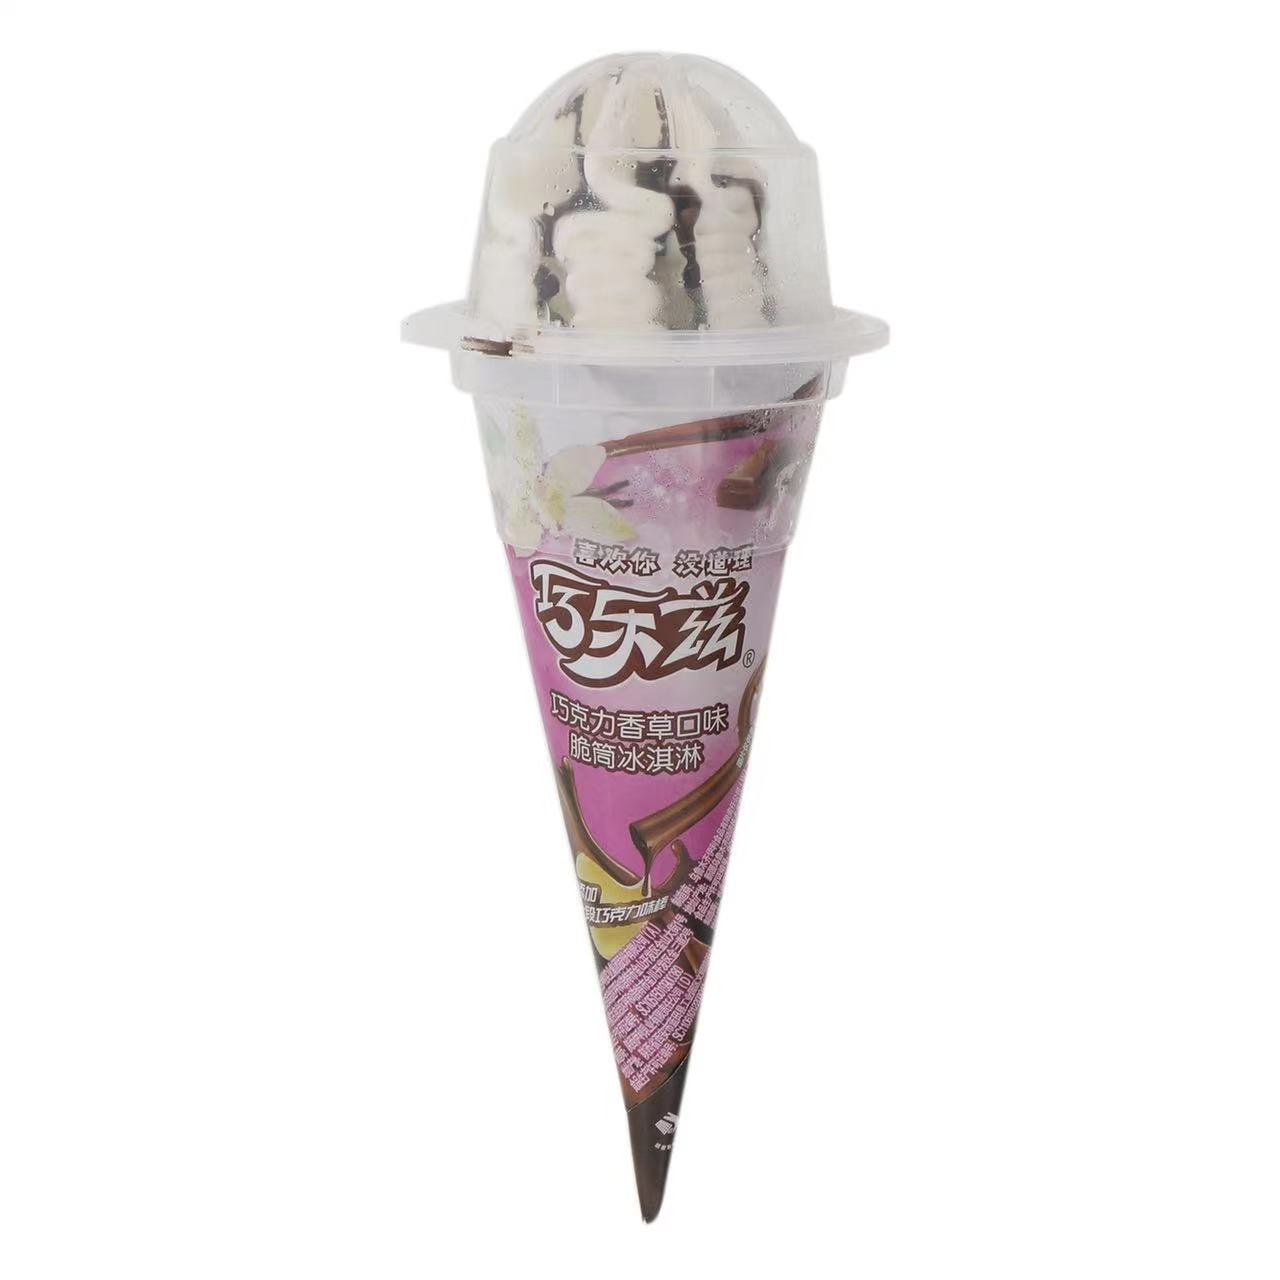 巧乐兹(黑巧+森林莓)口味脆筒冰淇淋(85克*16支)